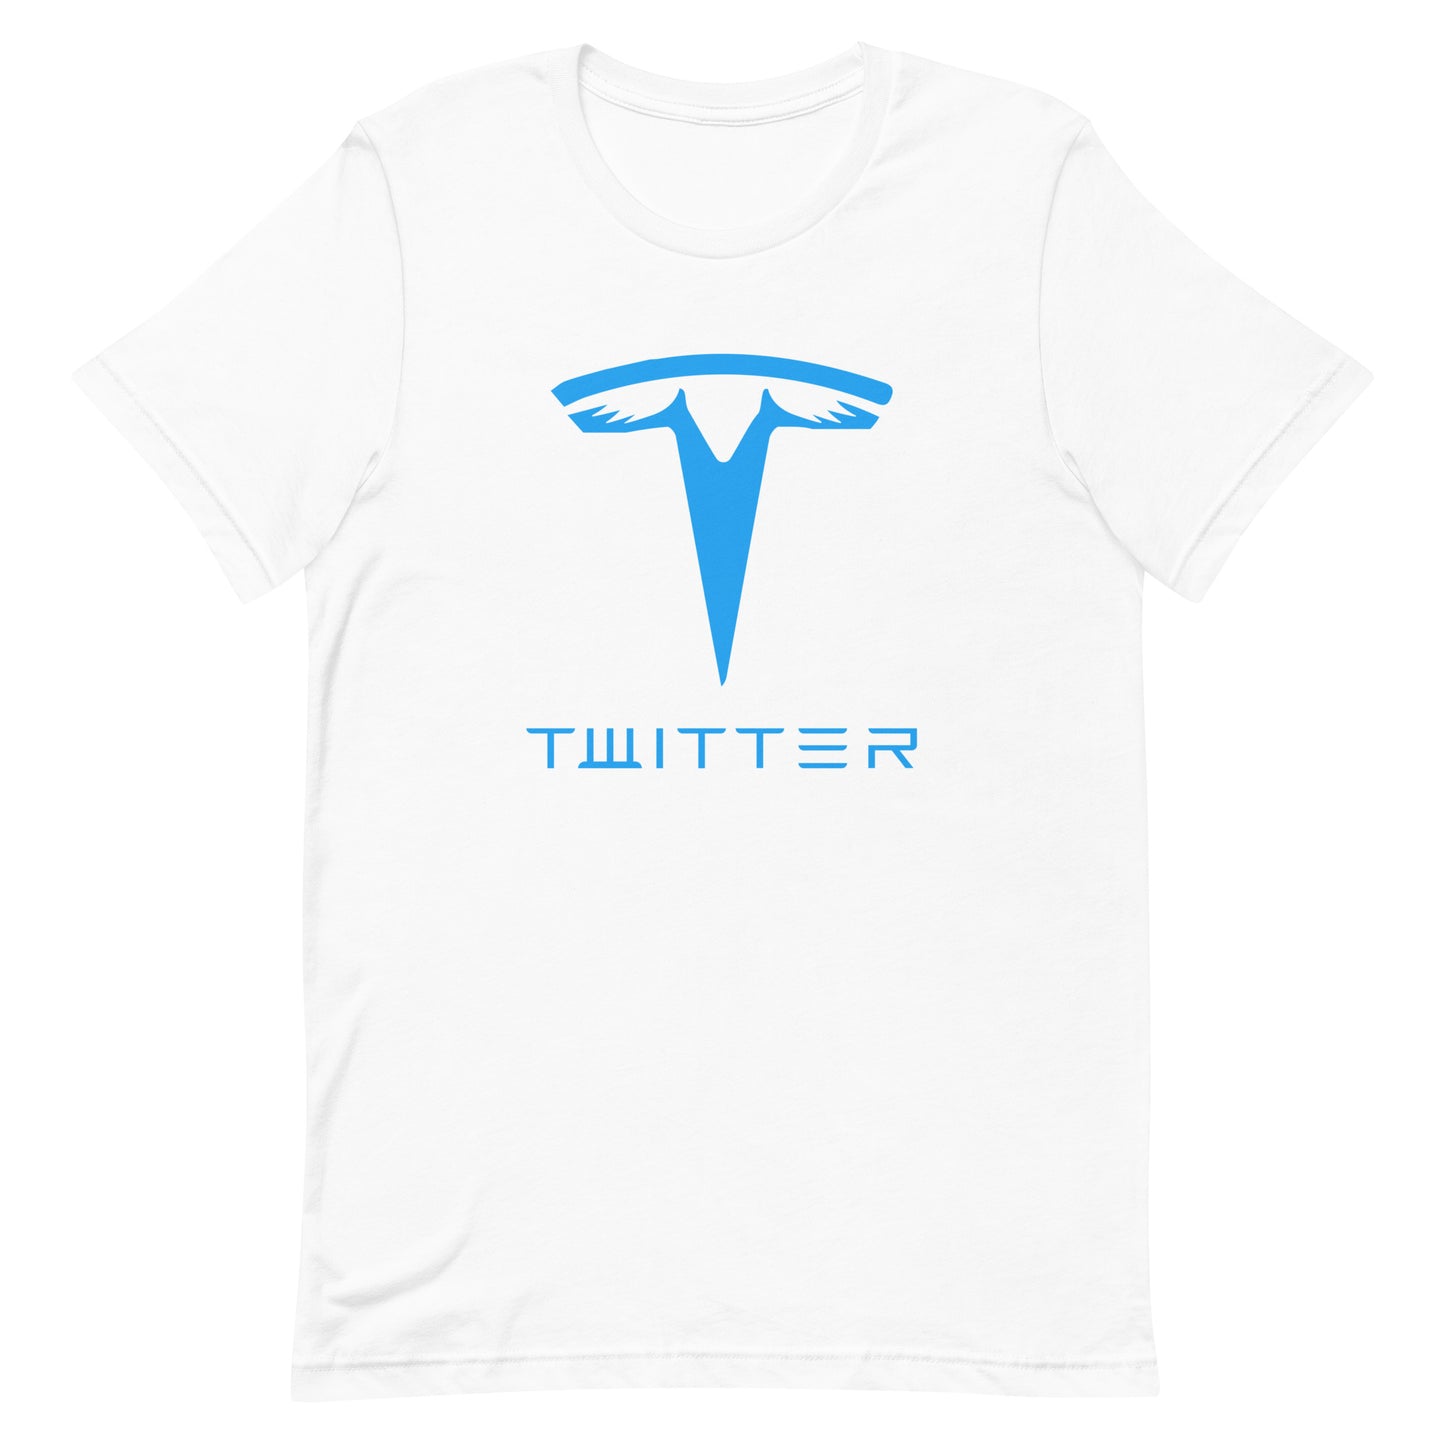 Twitter "T" T-shirt